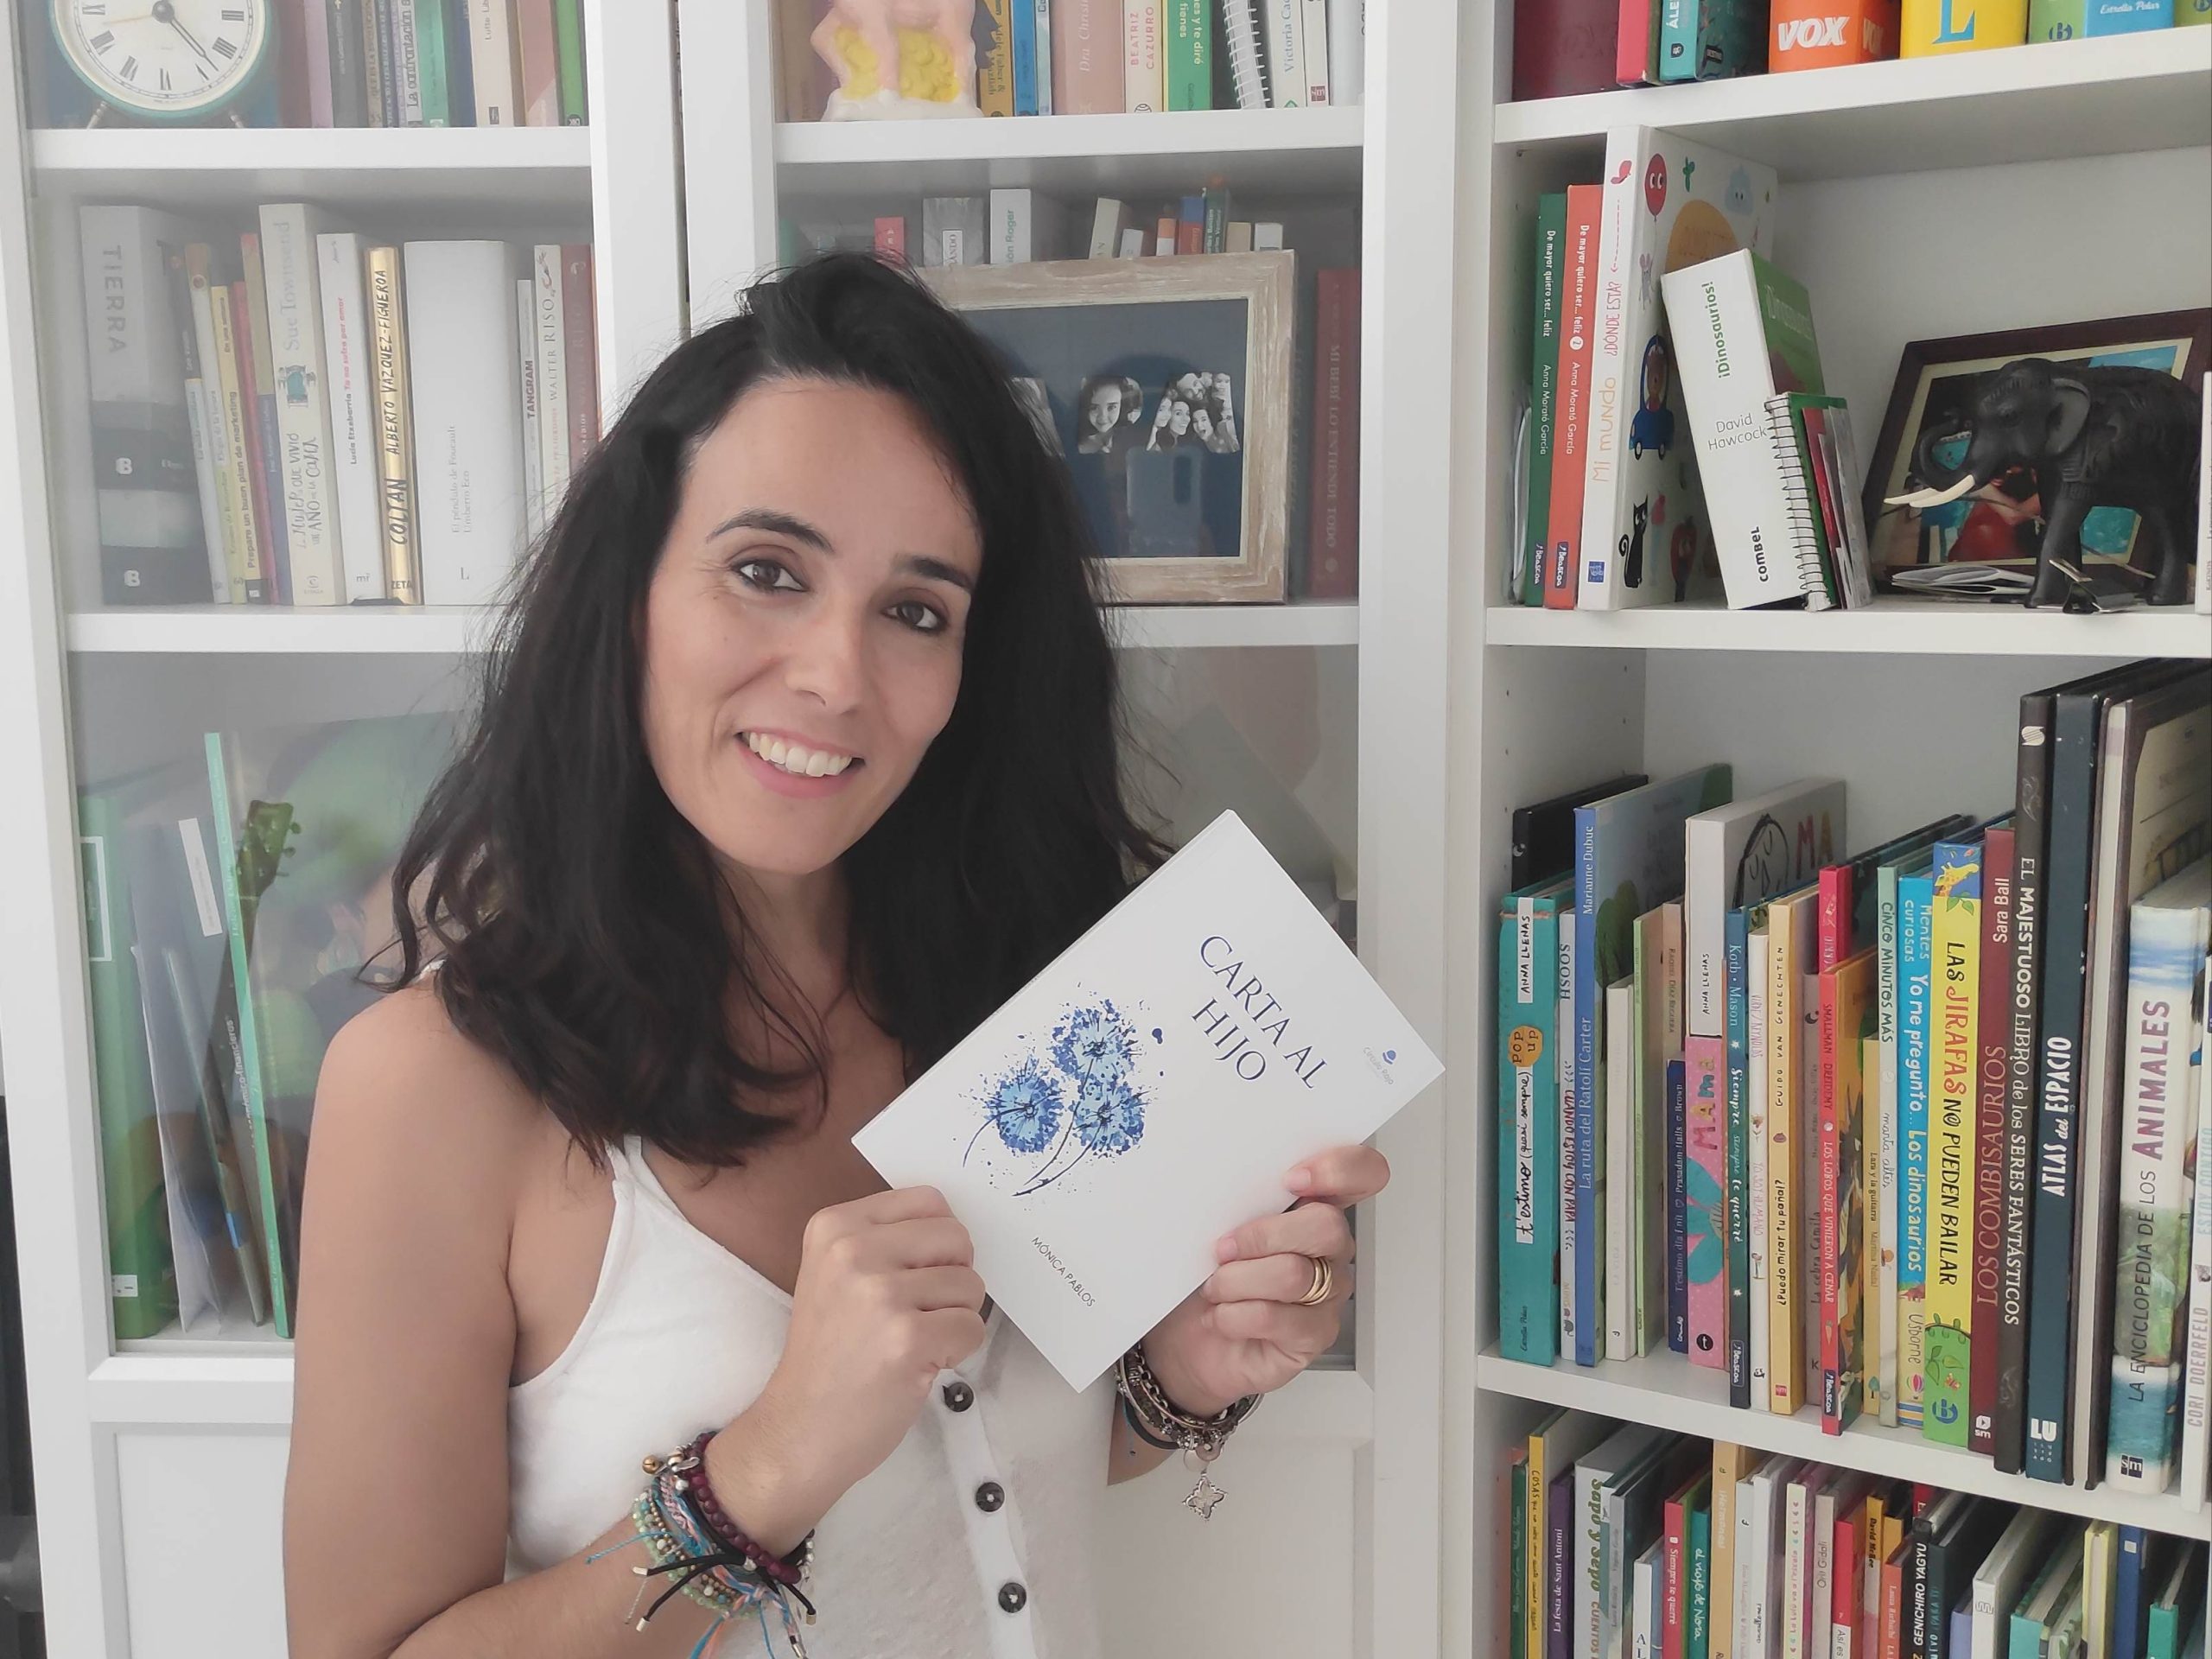 Entrevistamos a Mónica Pablos, quien ha publicado recientemente de la mano de Círculo Rojo la obra “Carta al hijo”.